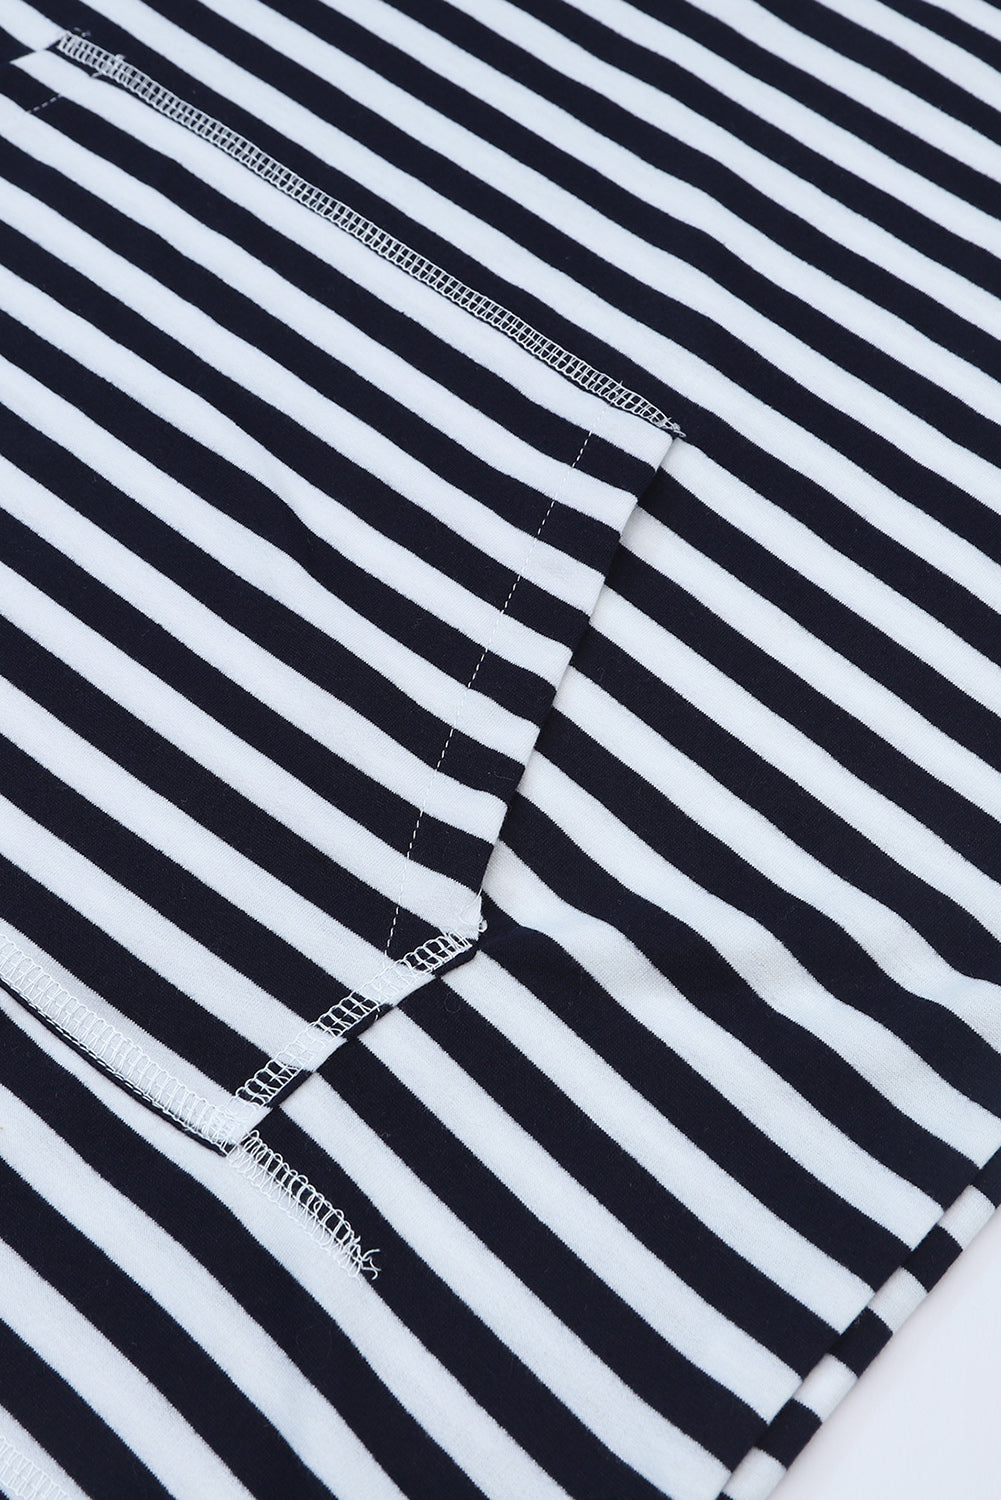 Stripe Print Kangaroo Pocket Drawstring Hoodie